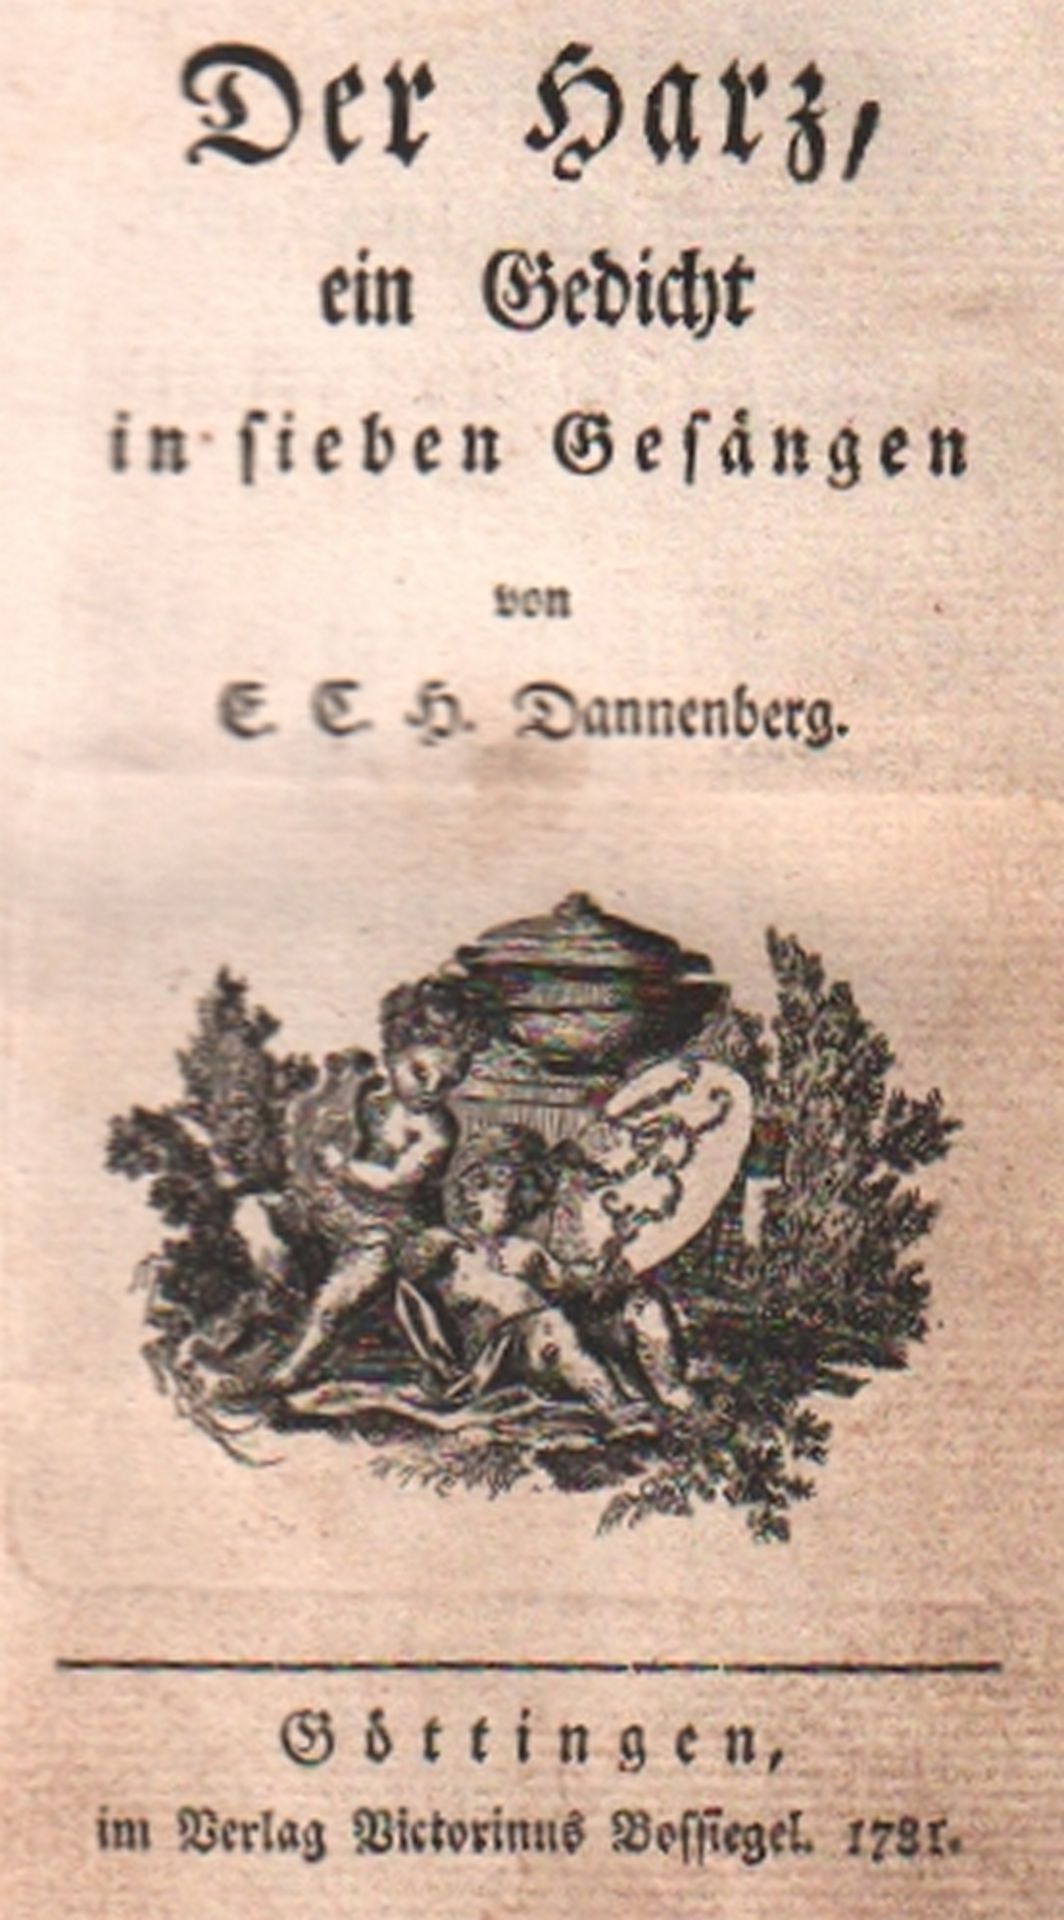 Harz. Dannenberg, E.(rich) Chr.(istian) H.(einrich). Der Harz, ein Gedicht in sieben Gesängen.